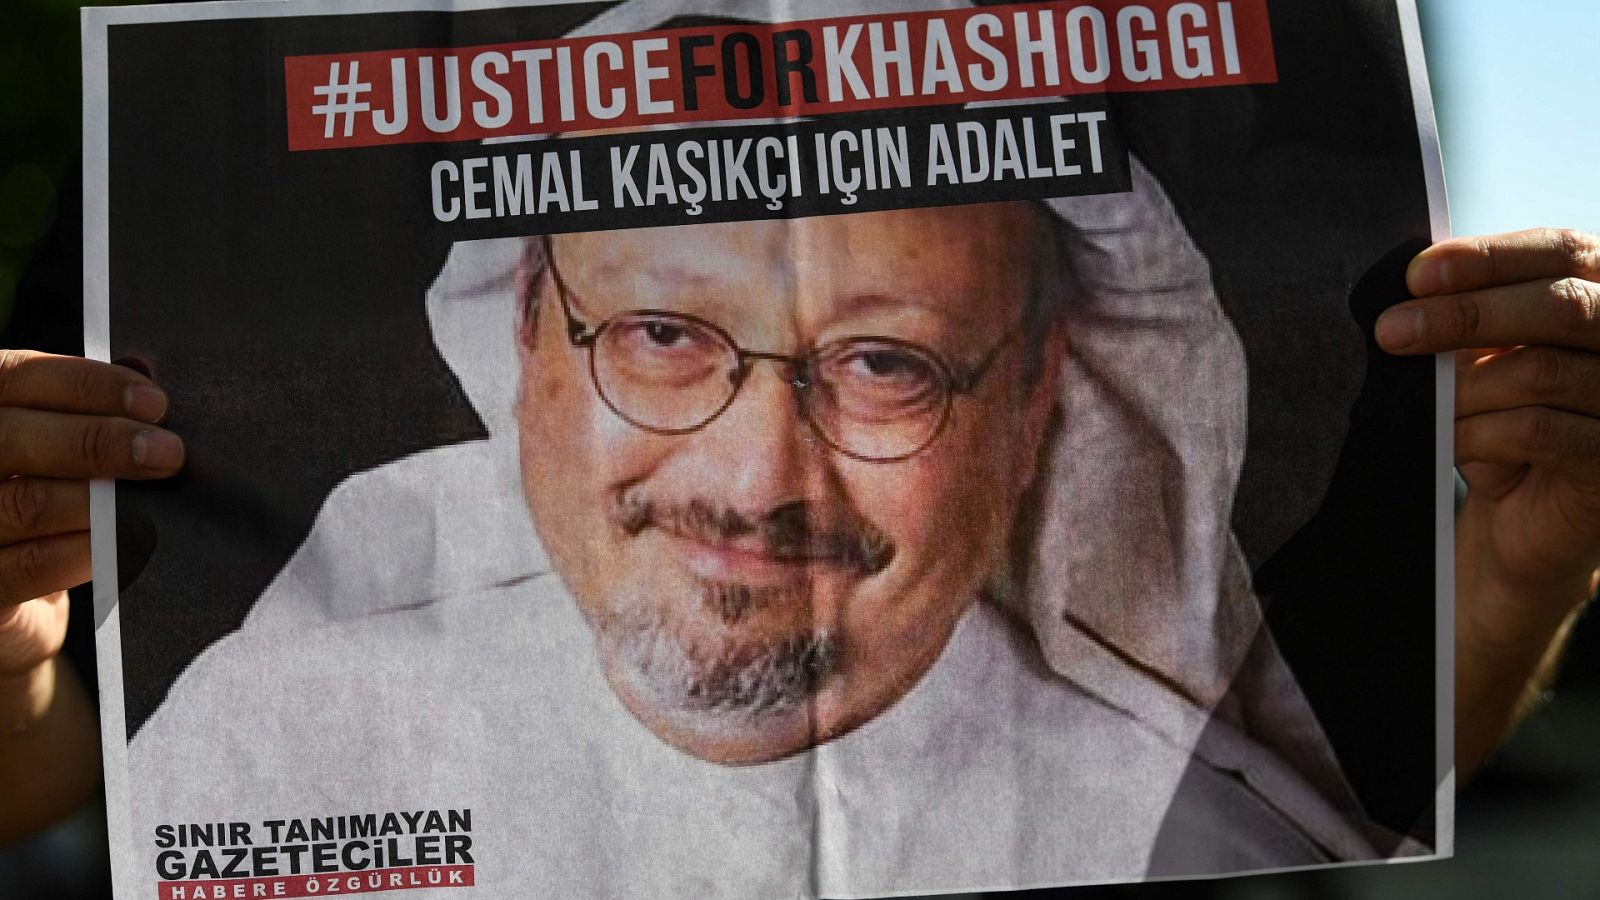 El periodista saudí, Jamal Khashoggi, en un cartel en el que se pide justicia por su asesinato en 2018